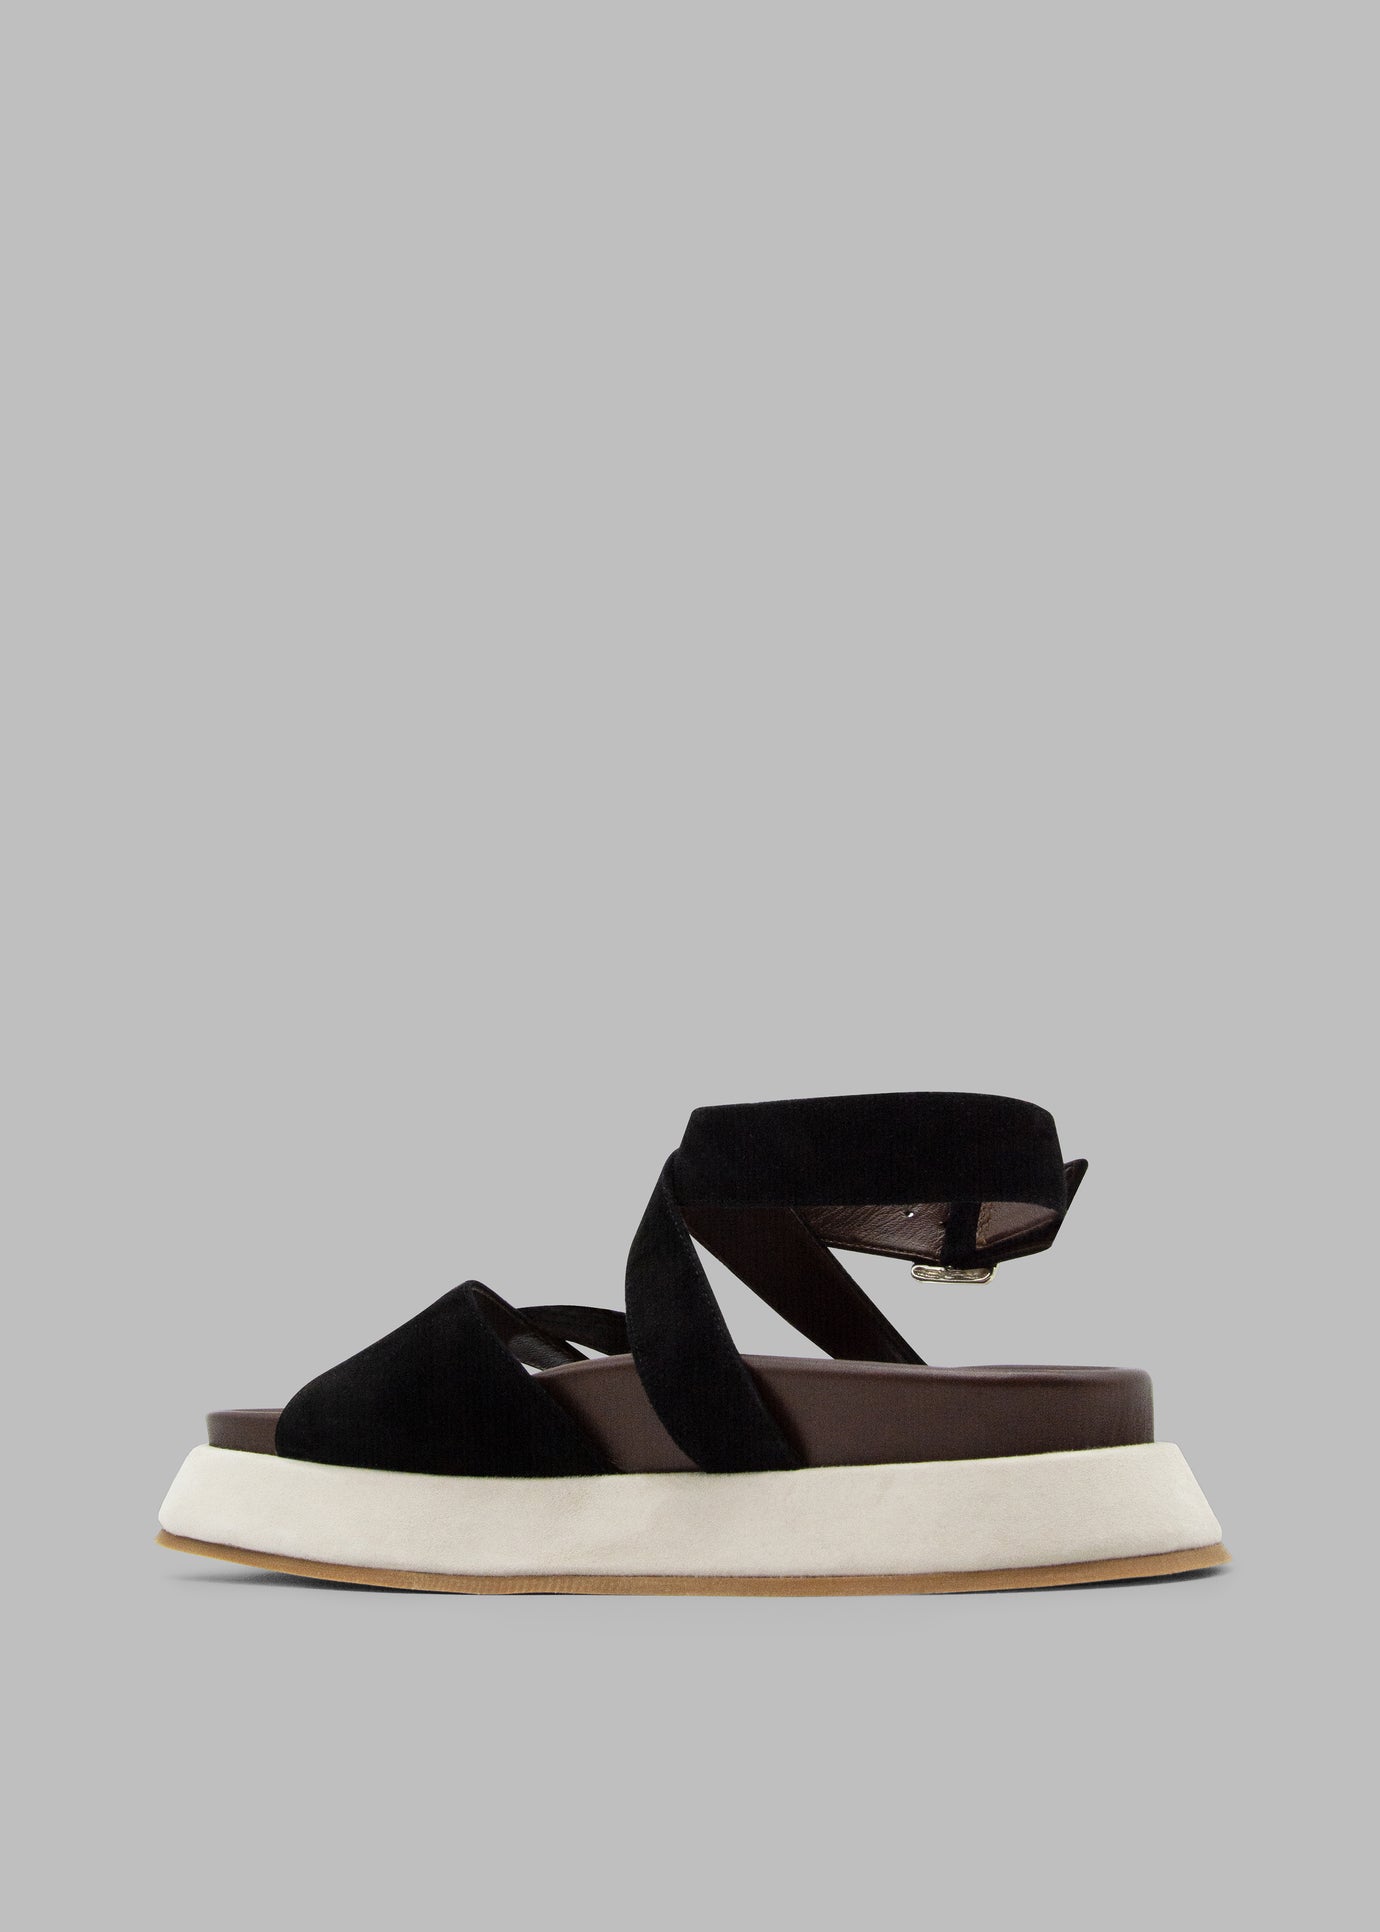 Gia Borghini Rosie 41 Flat Sandals - Black/Chocolate/Beige - 1